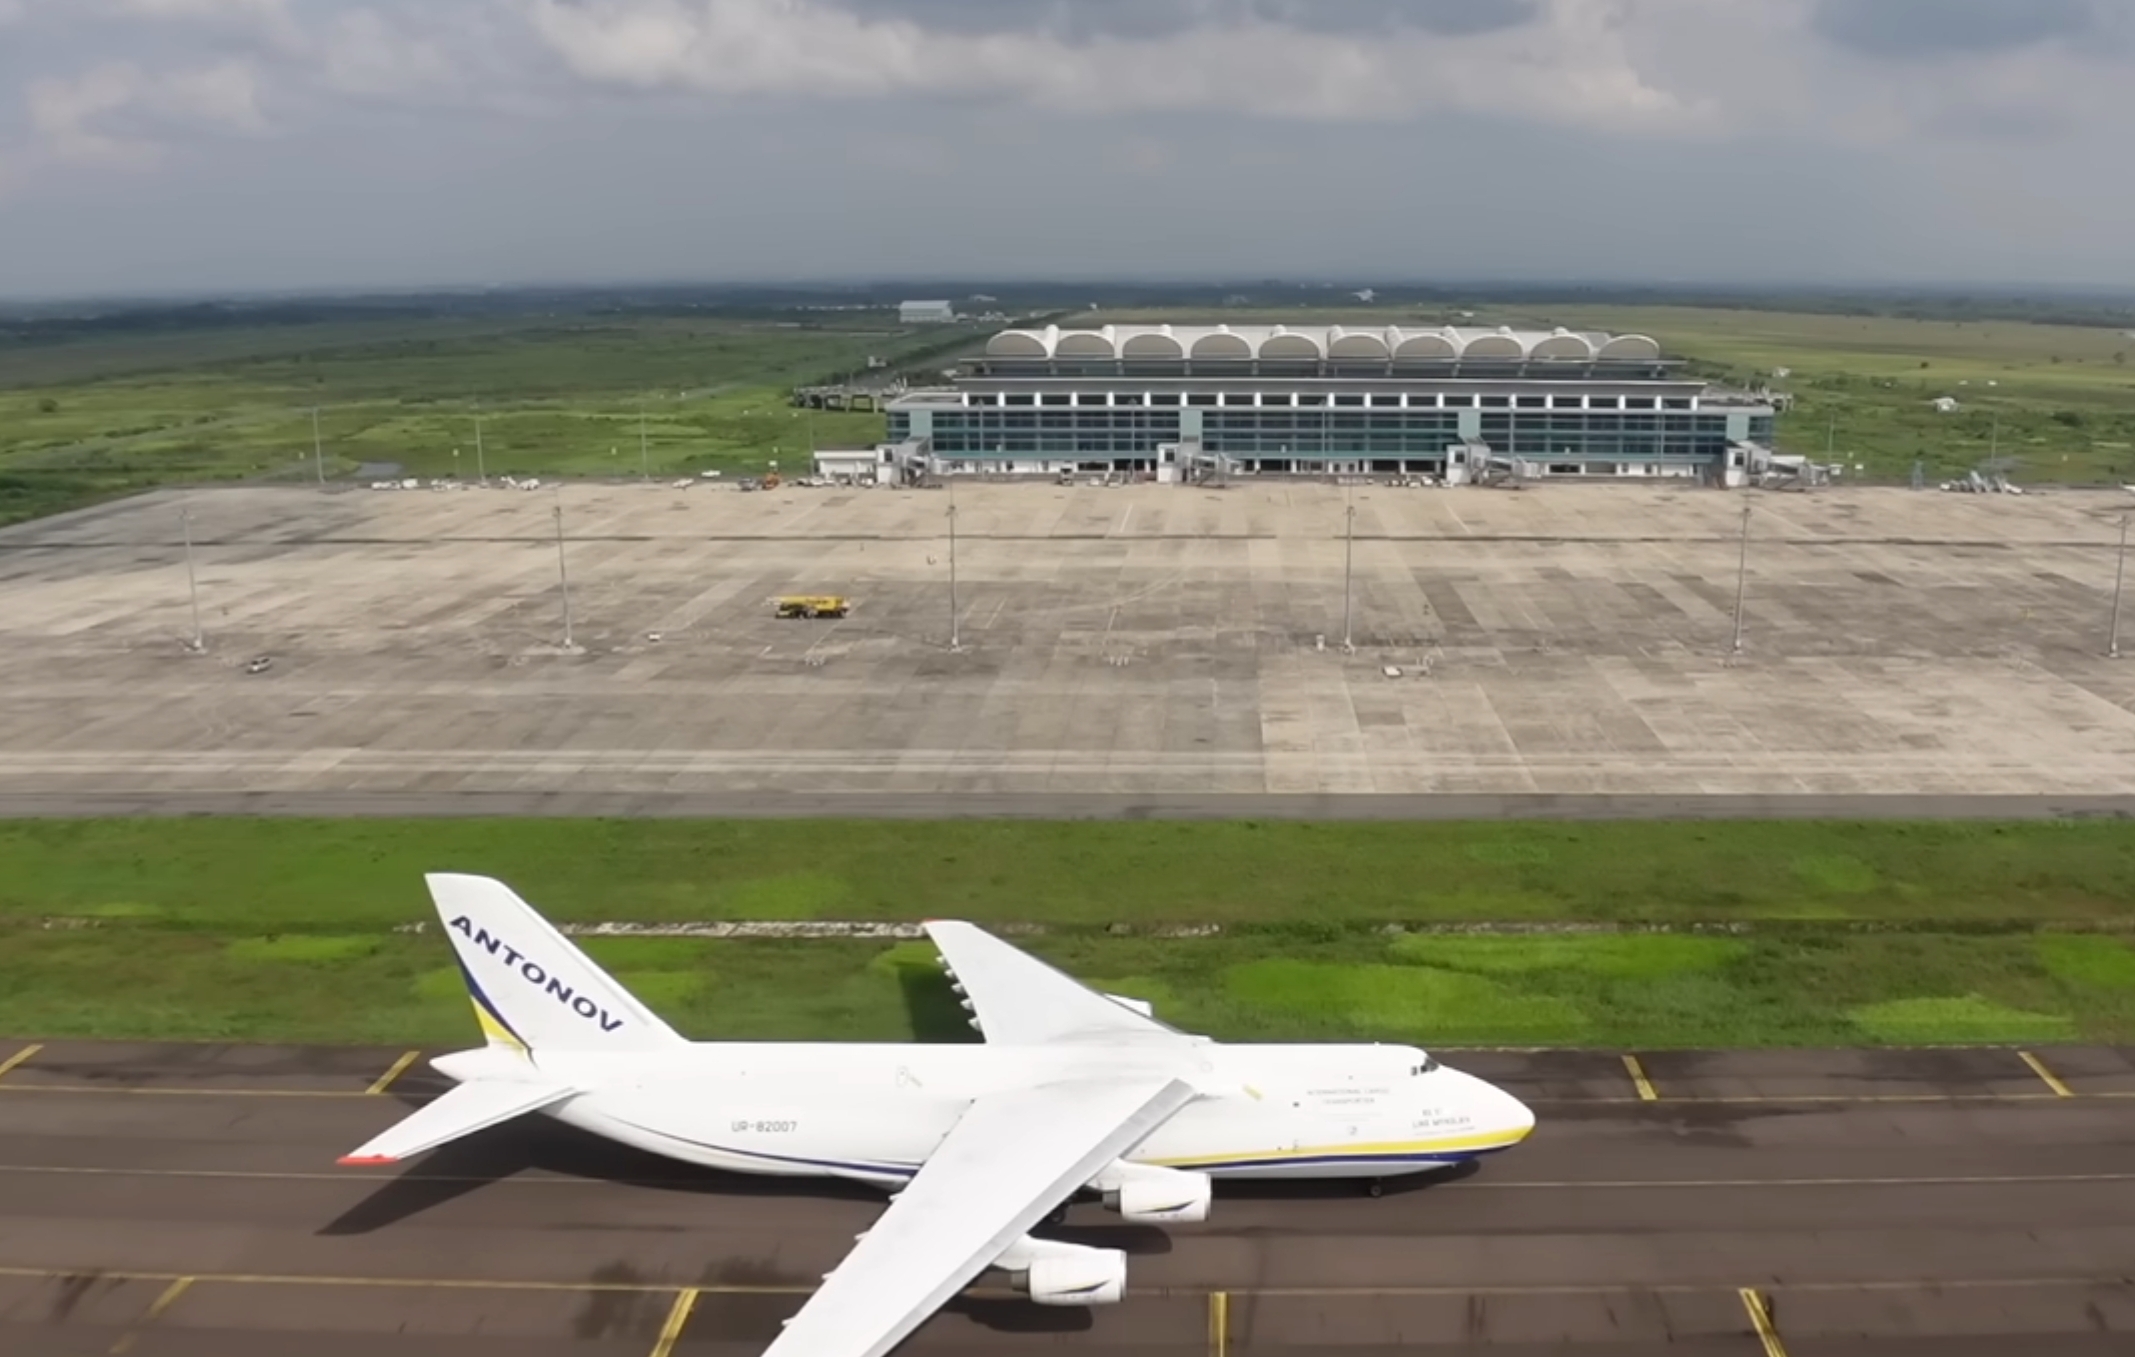 7 Bandara Internasional dengan Runway Terpanjang di Indonesia, Salah Satunya Belum Beroperasi